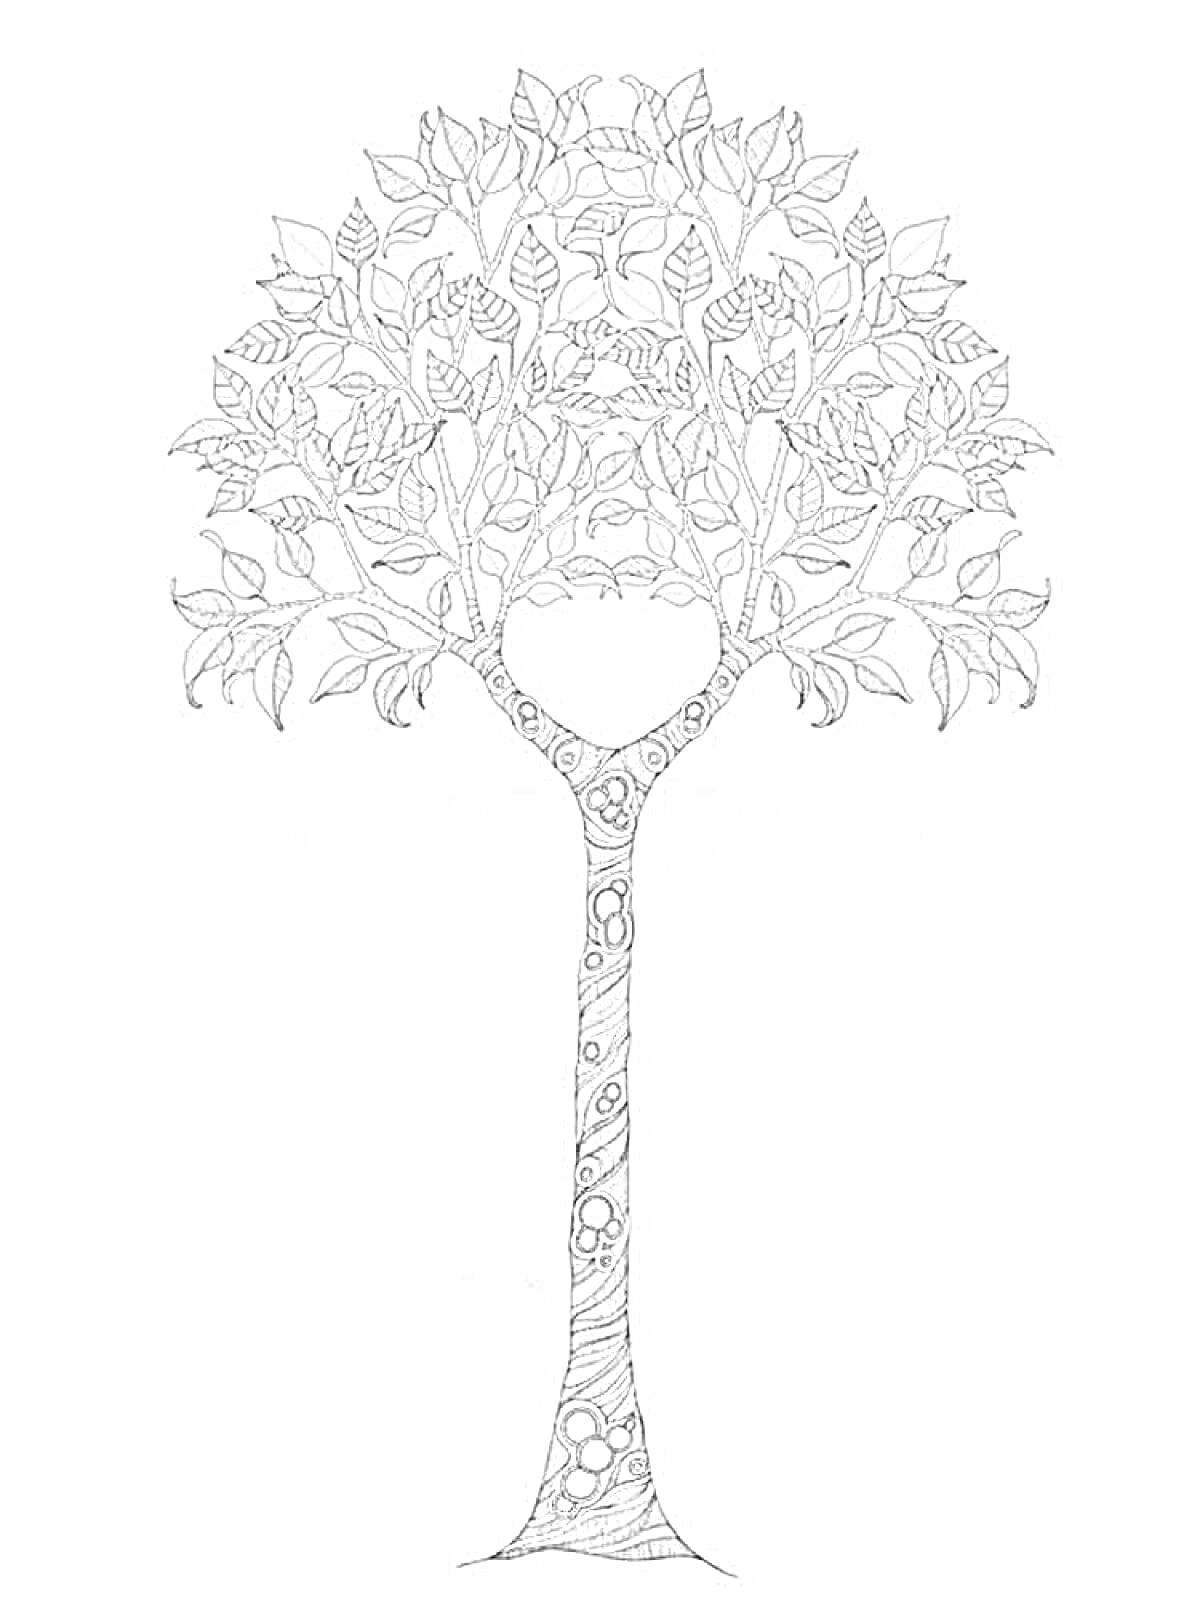 Раскраска Декоративное дерево с узорами в листьях и на стволе